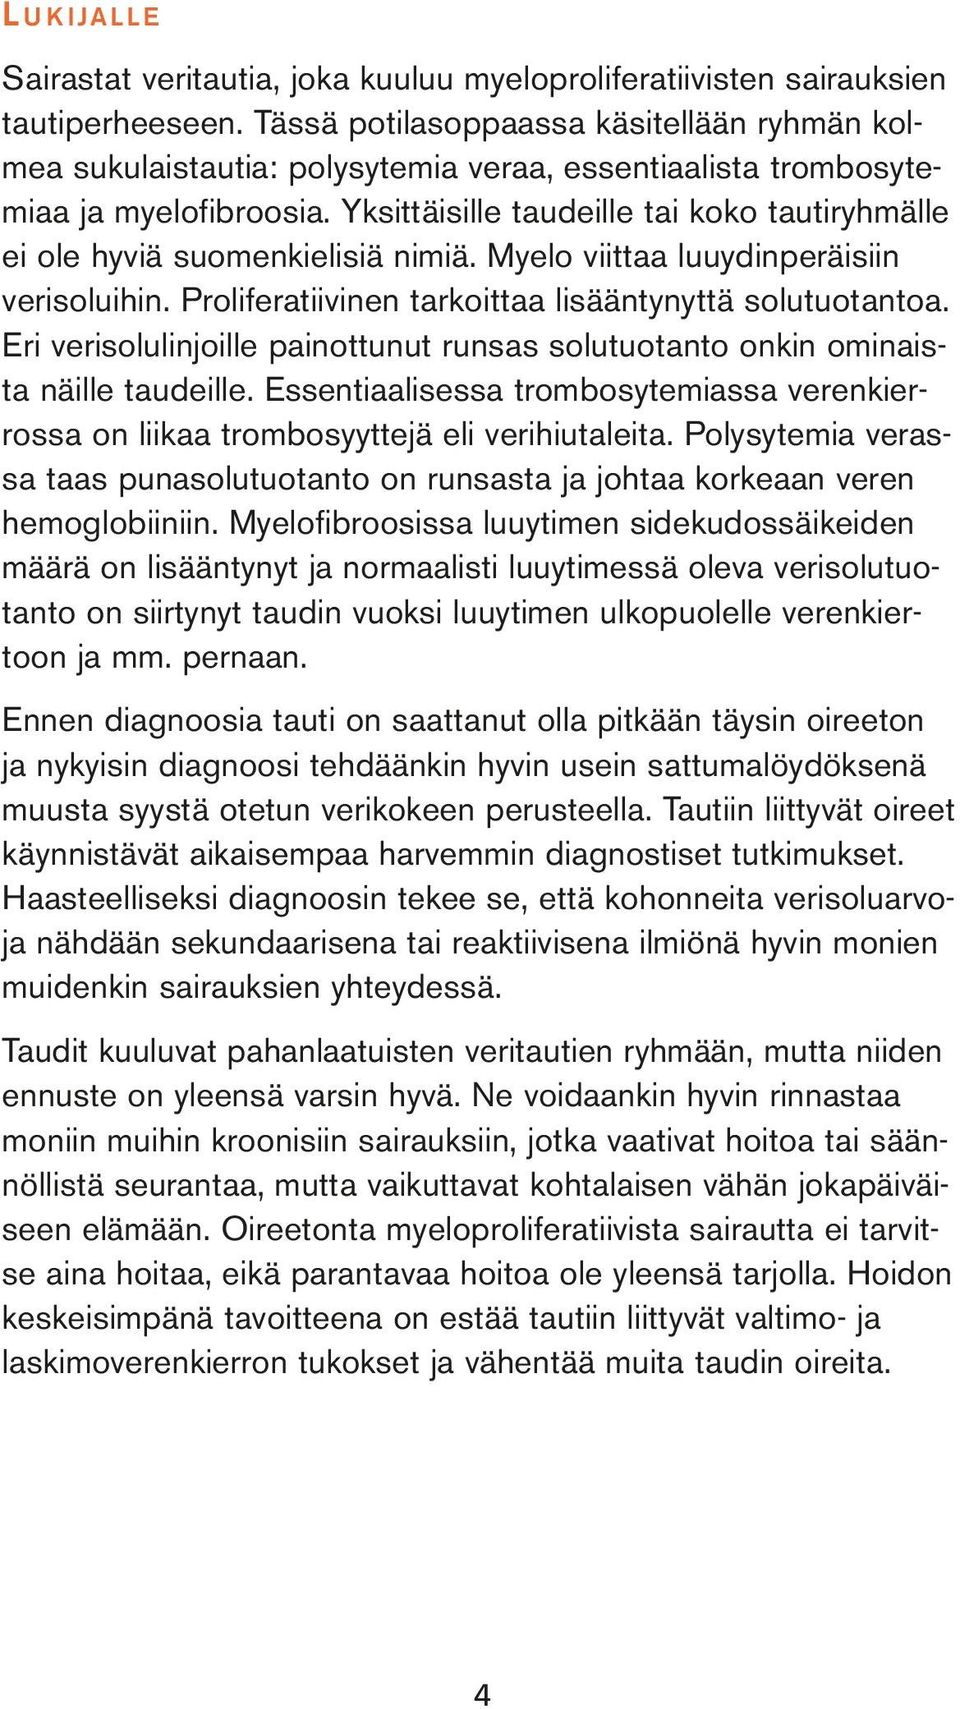 Yksittäisille taudeille tai koko tautiryhmälle ei ole hyviä suomenkielisiä nimiä. Myelo viittaa luuydinperäisiin verisoluihin. Proliferatiivinen tarkoittaa lisääntynyttä solutuotantoa.